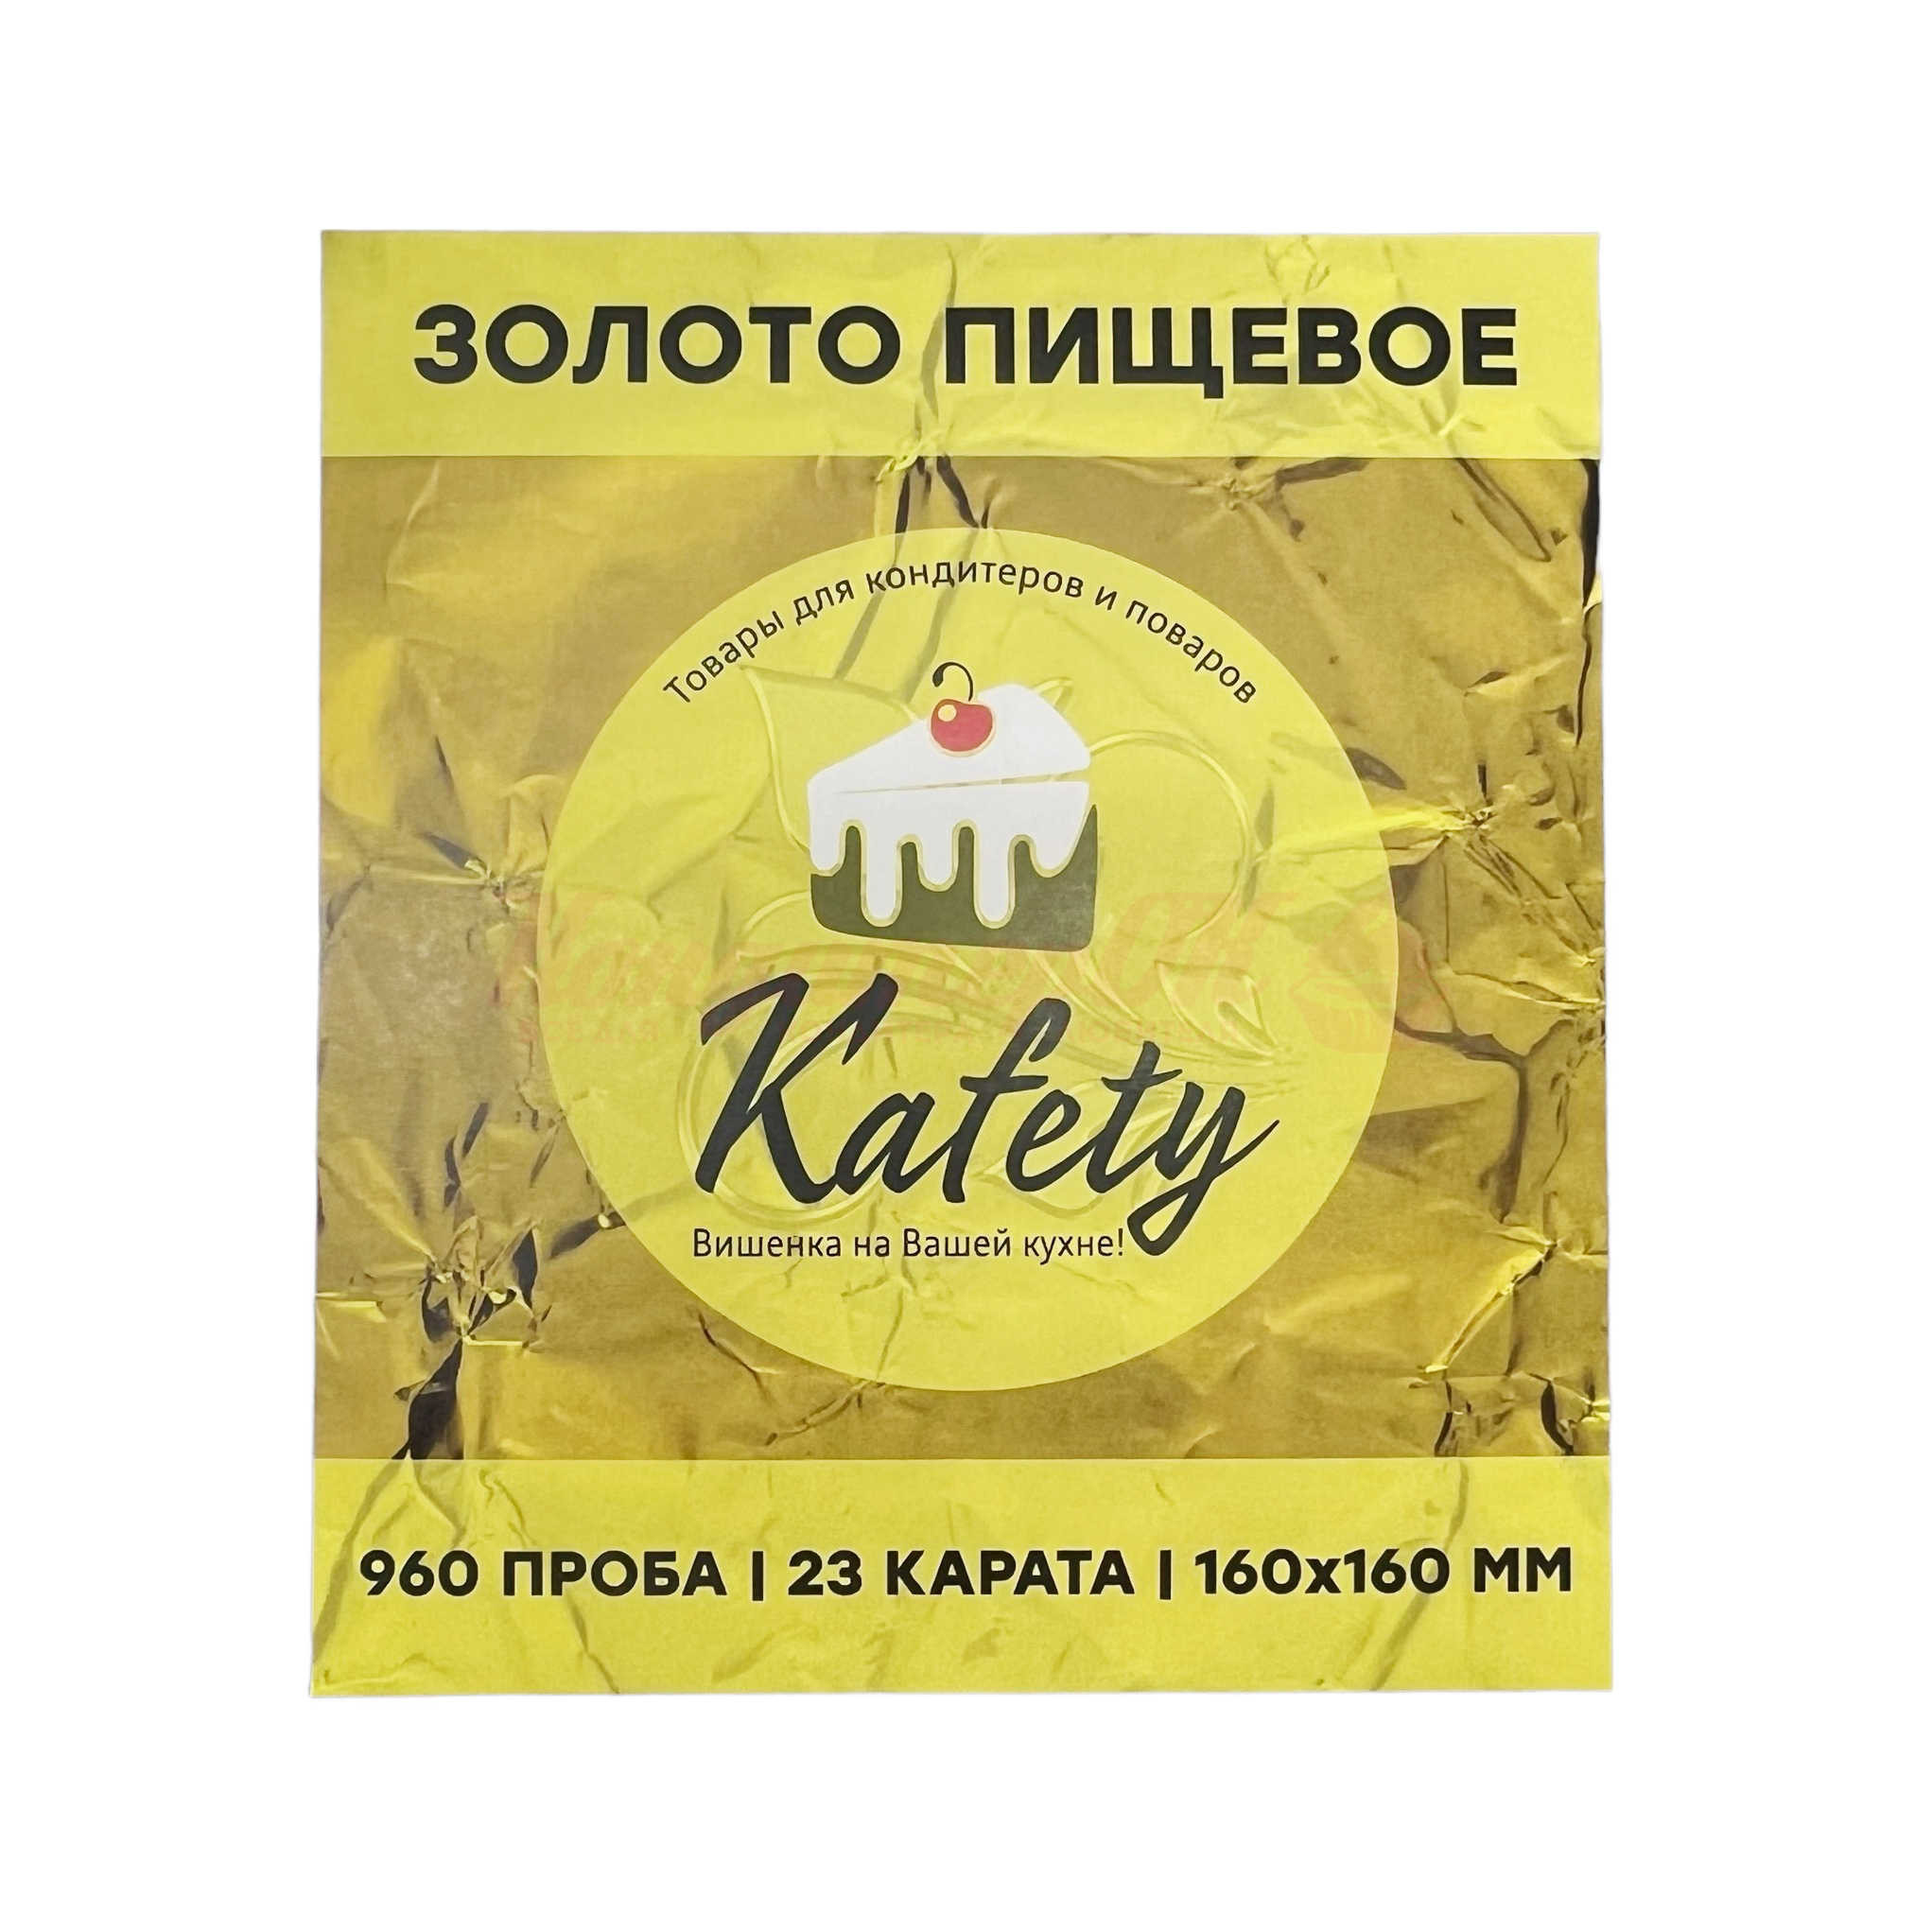 Пищевое Золото Kafety 16*16 см